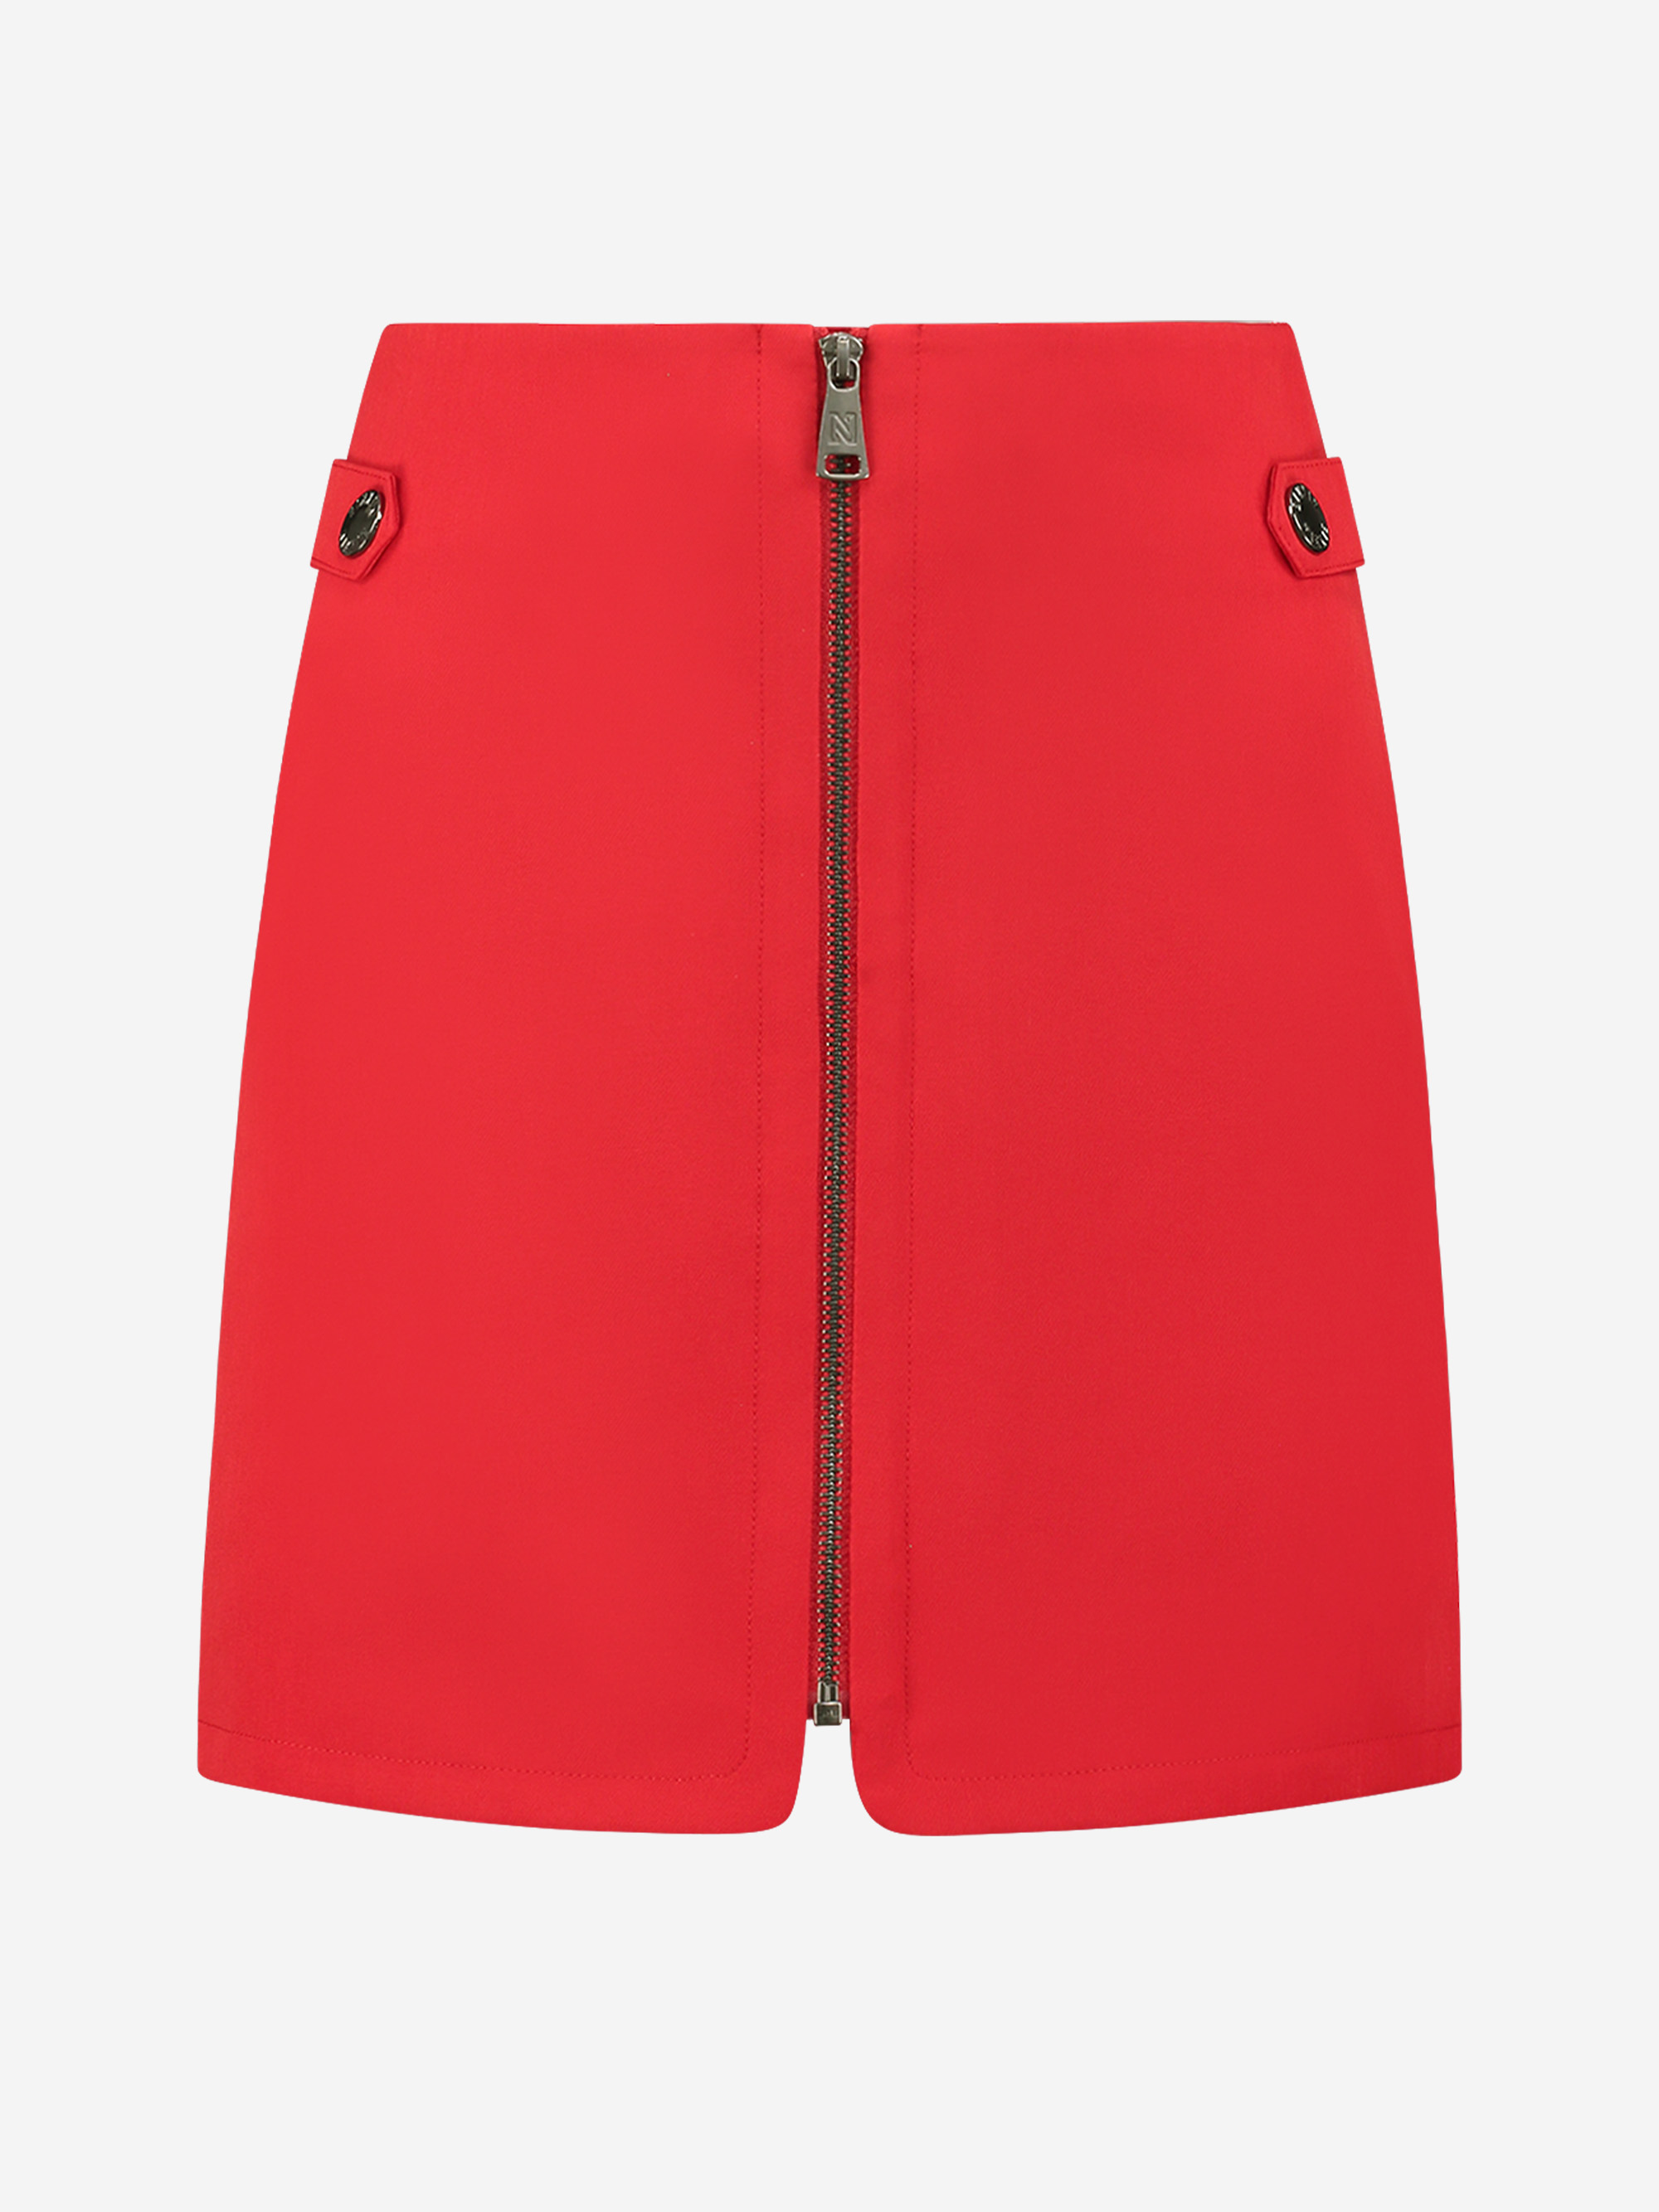 Skirt with zipper